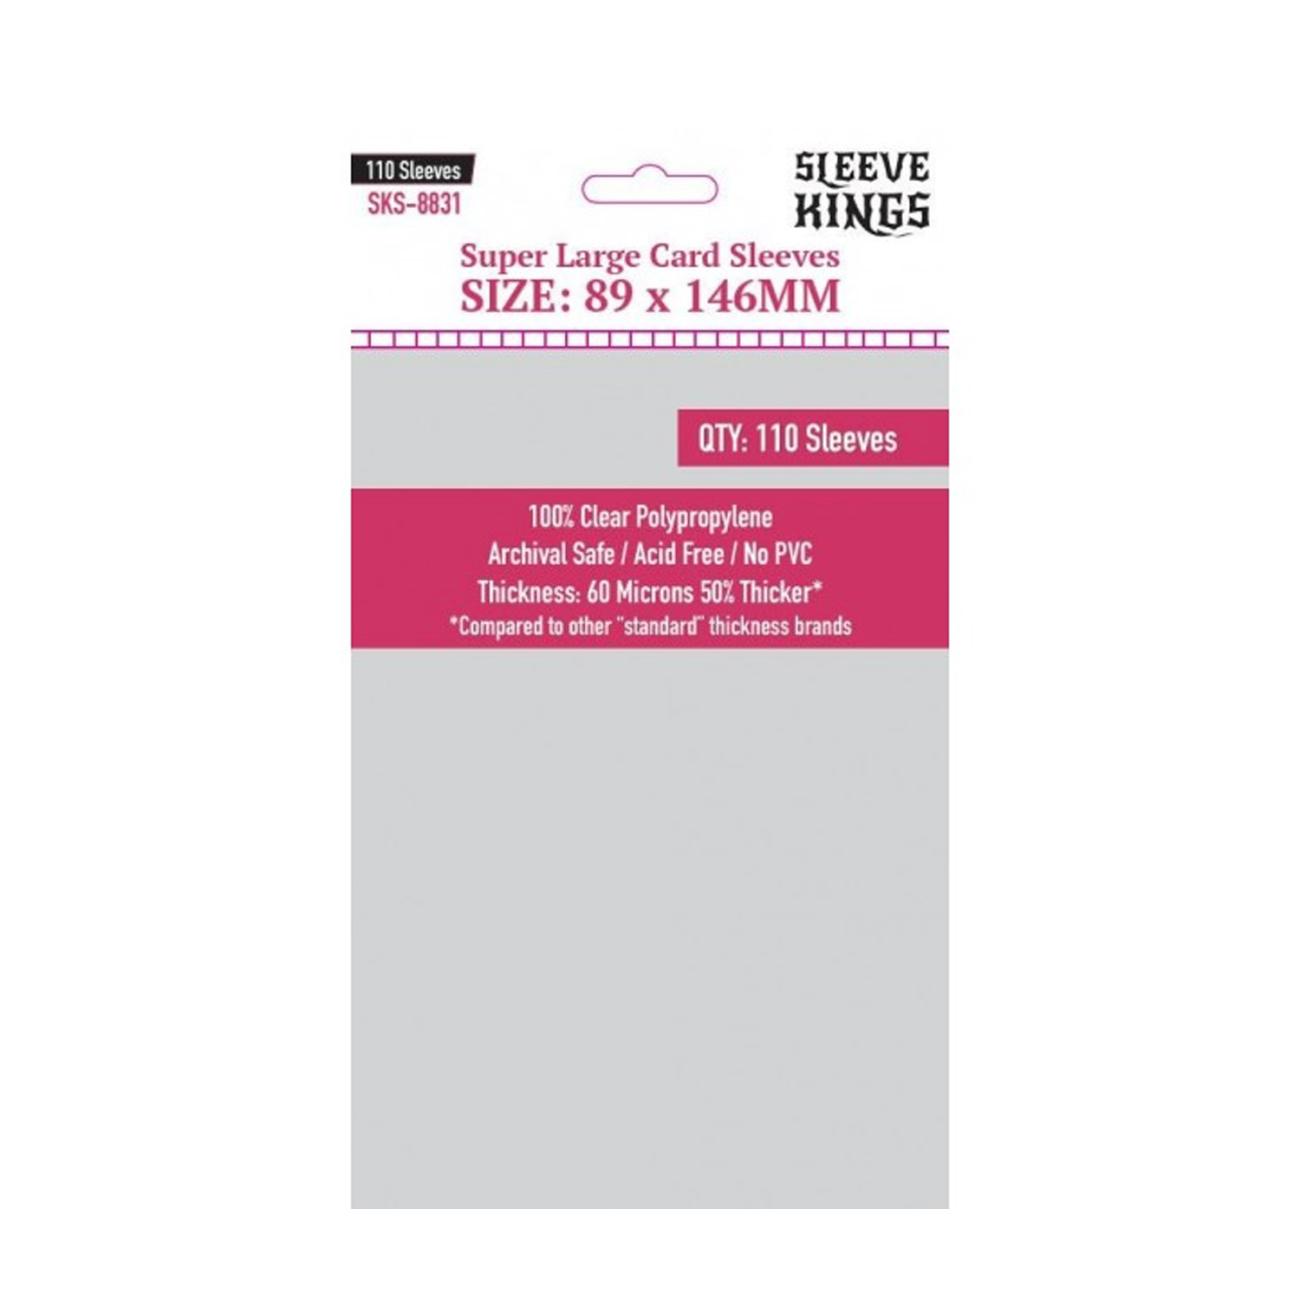 Super Large (89x146mm) Card Sleeves Sleeve Kings